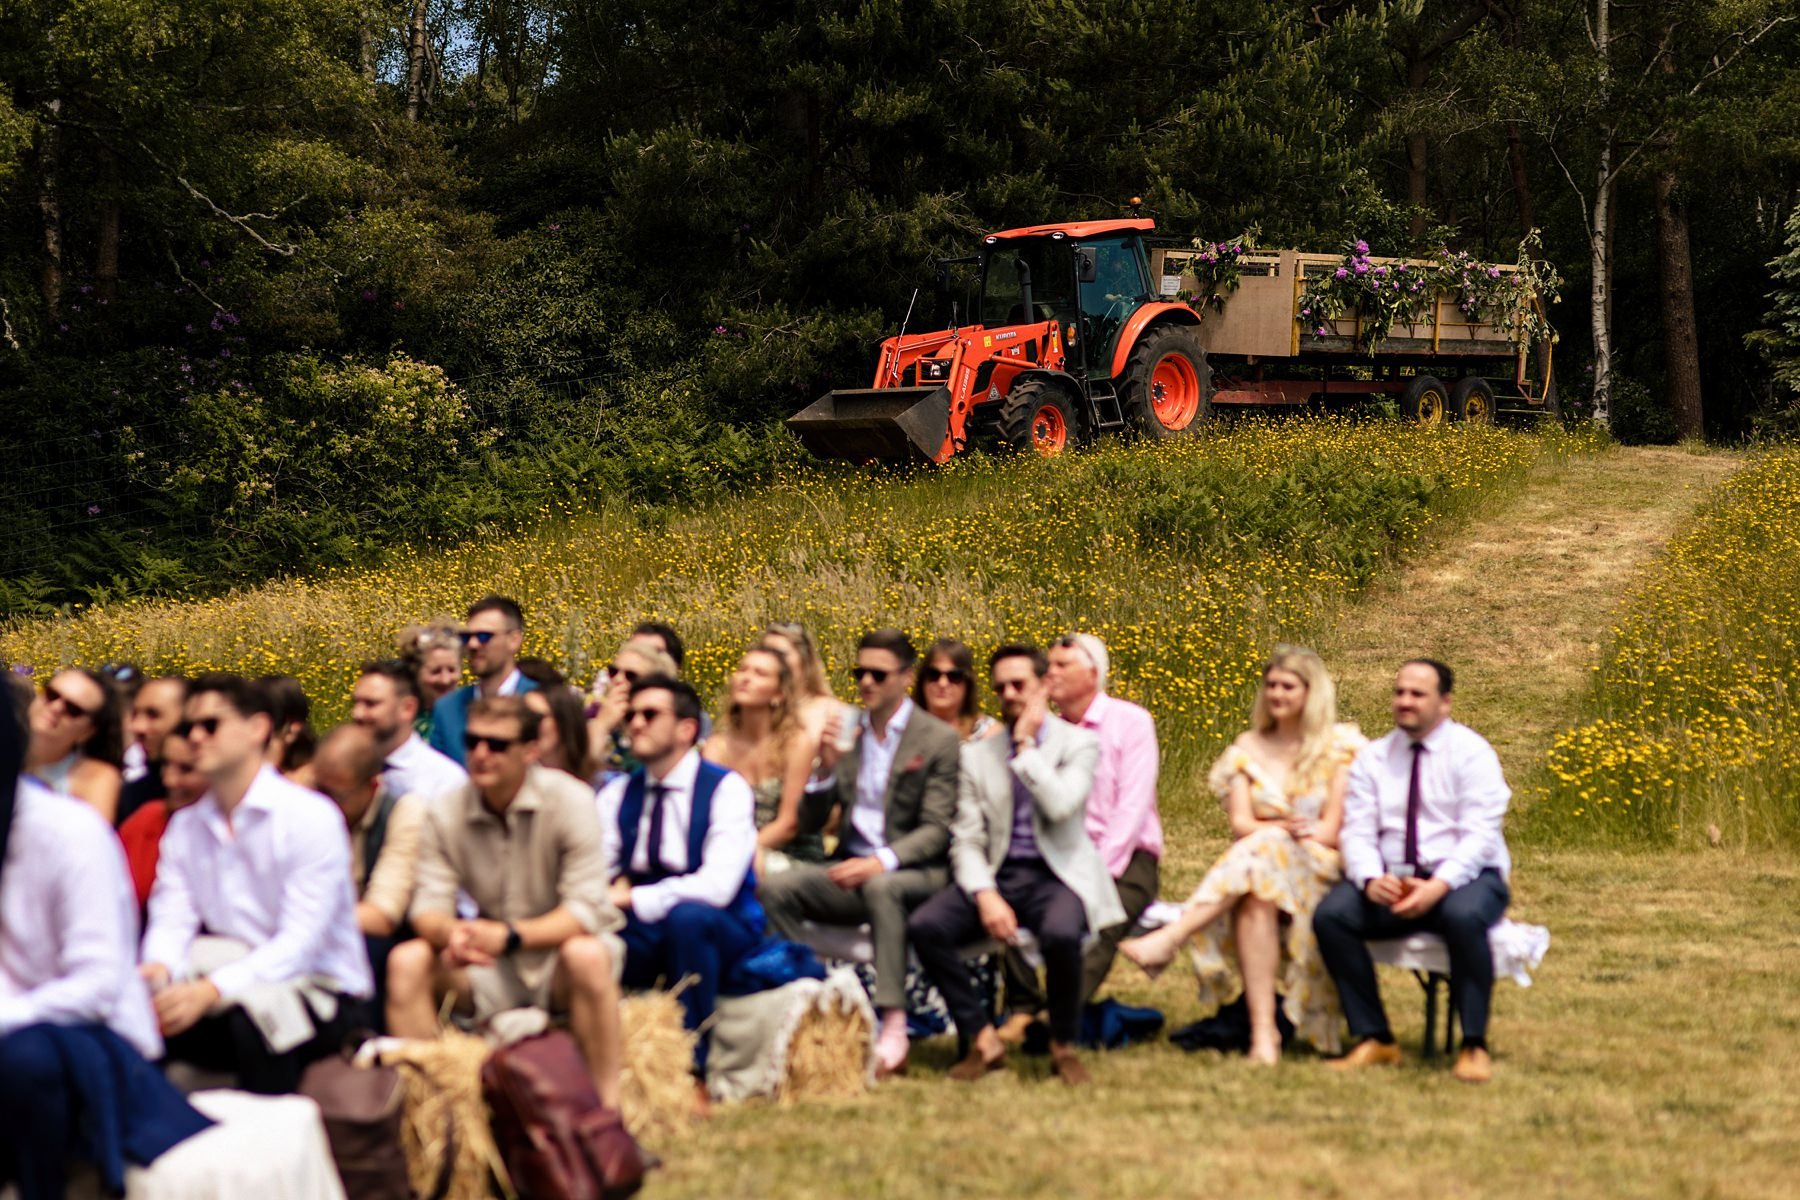 wylds-farm-wedding-photography_0031.jpg